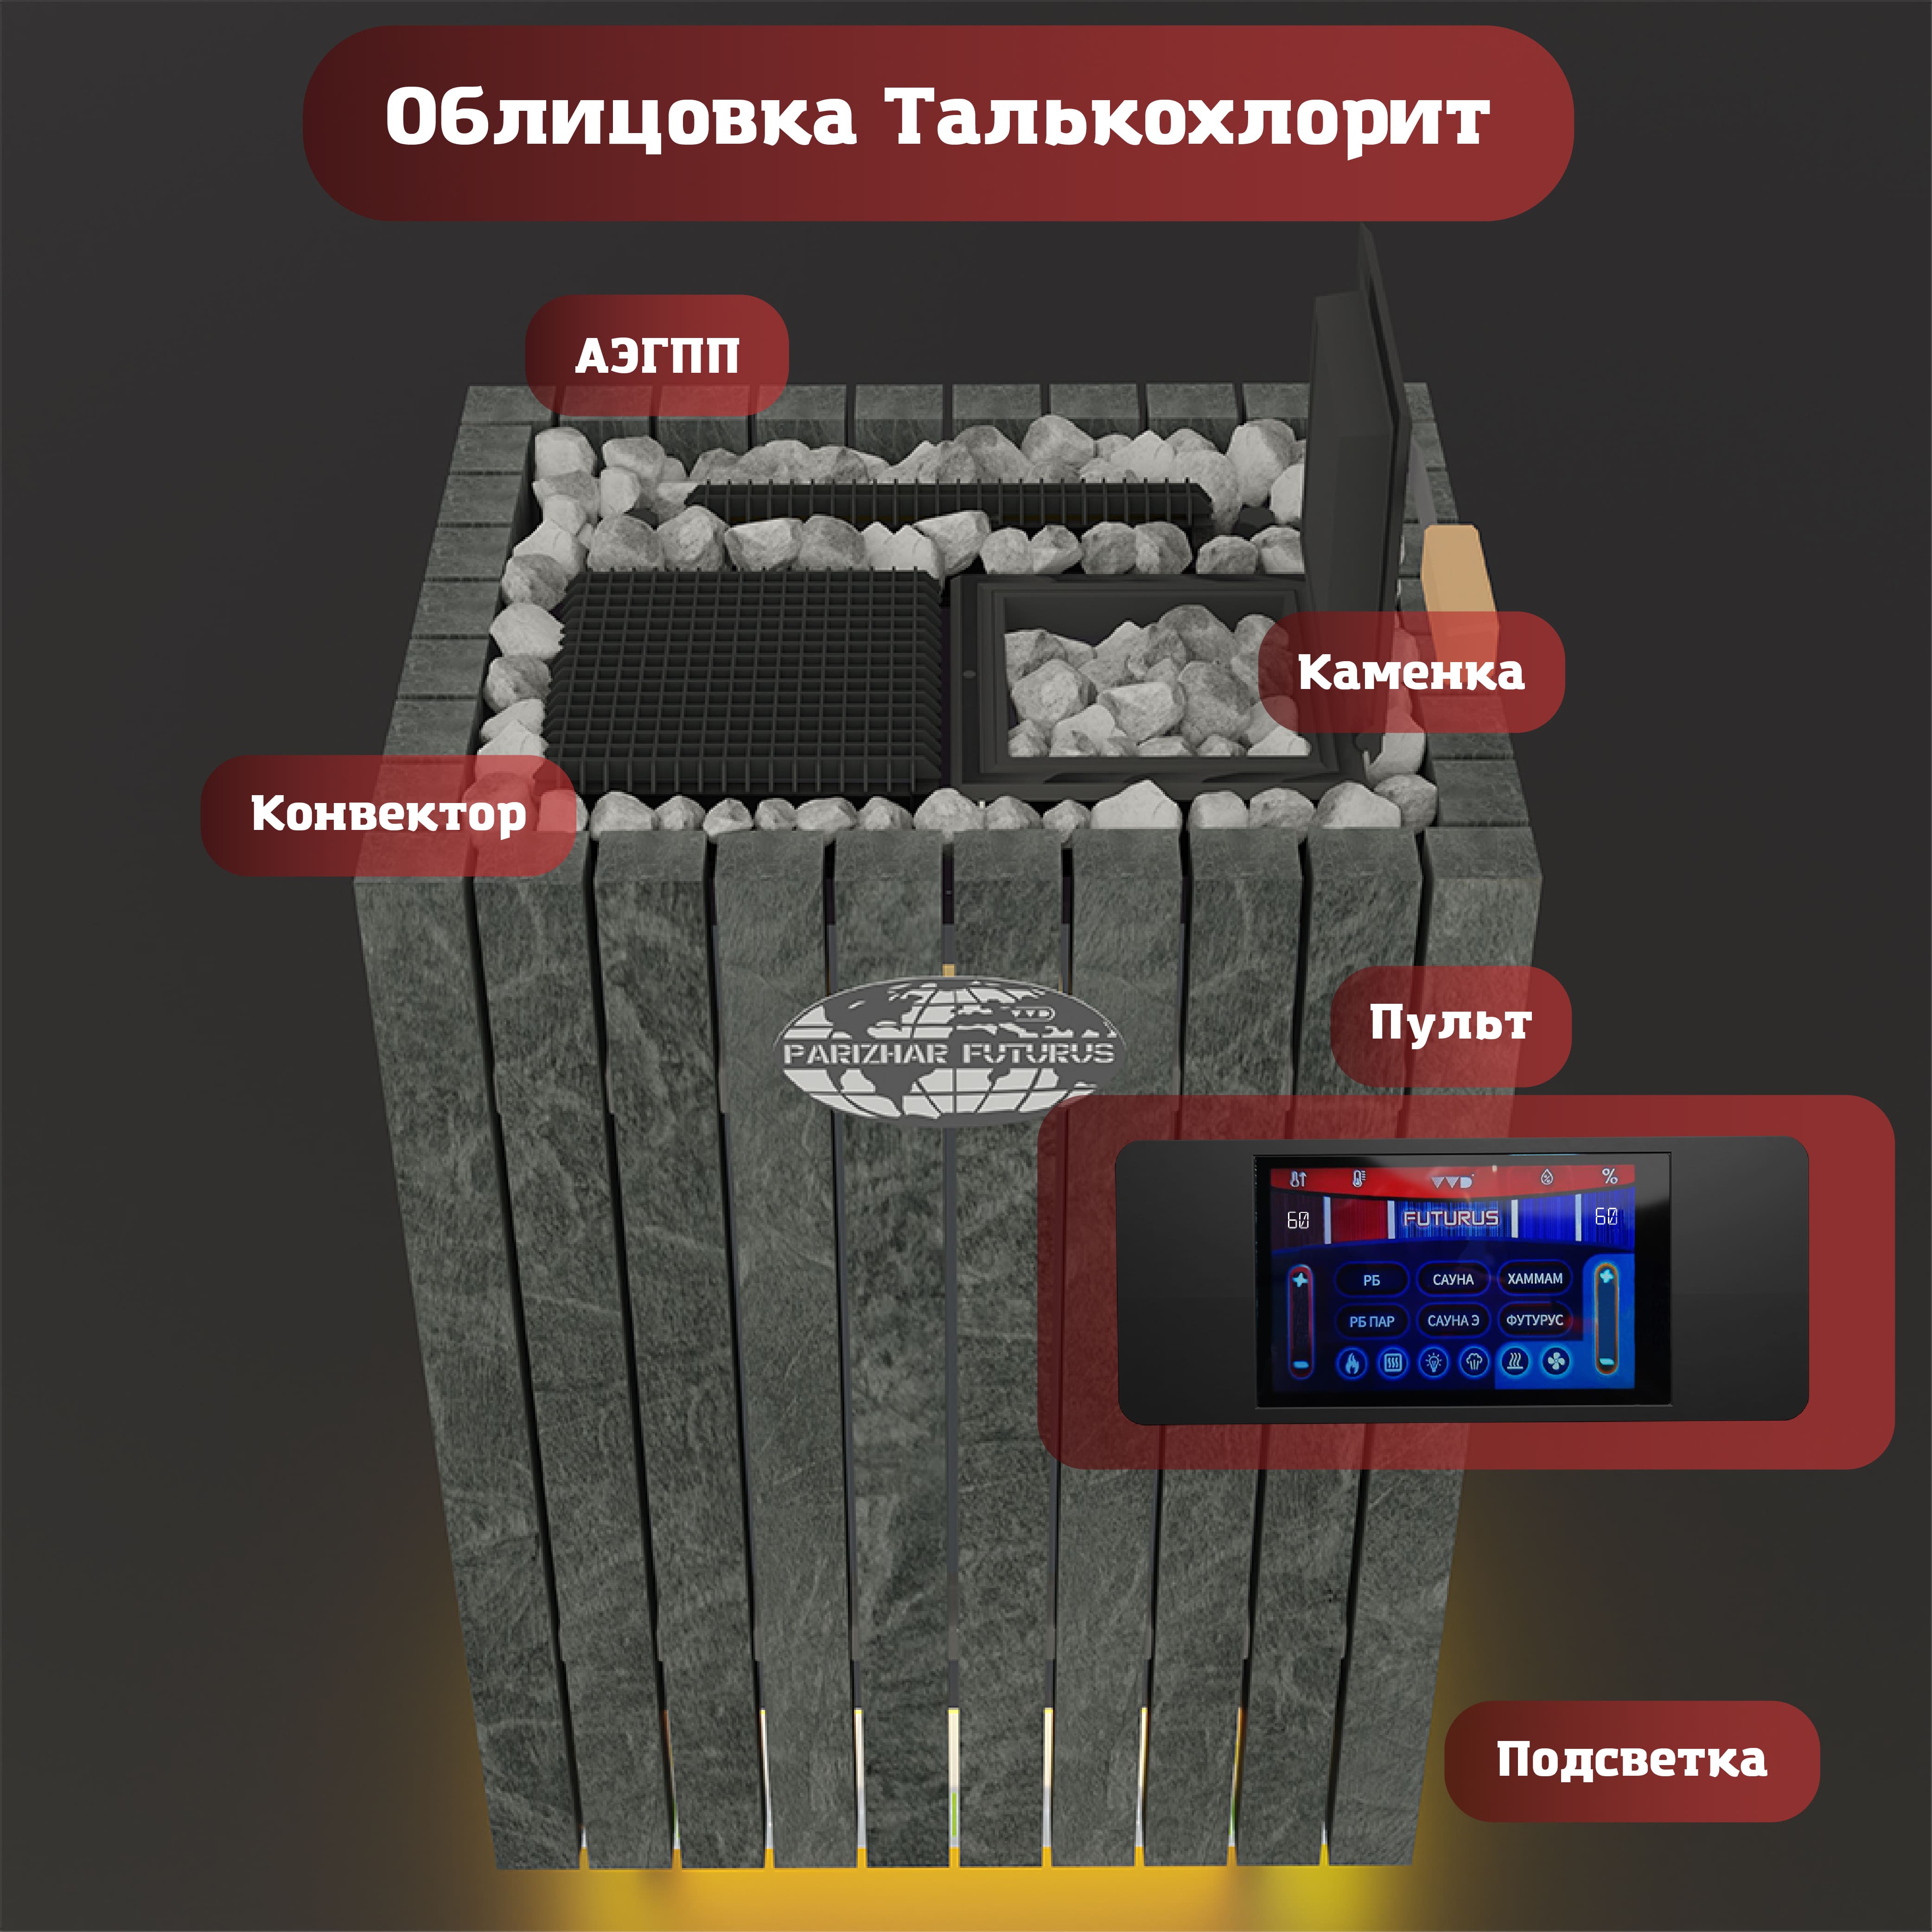 Электрическая паротермальная печь «ПАРиЖАР Футурус»